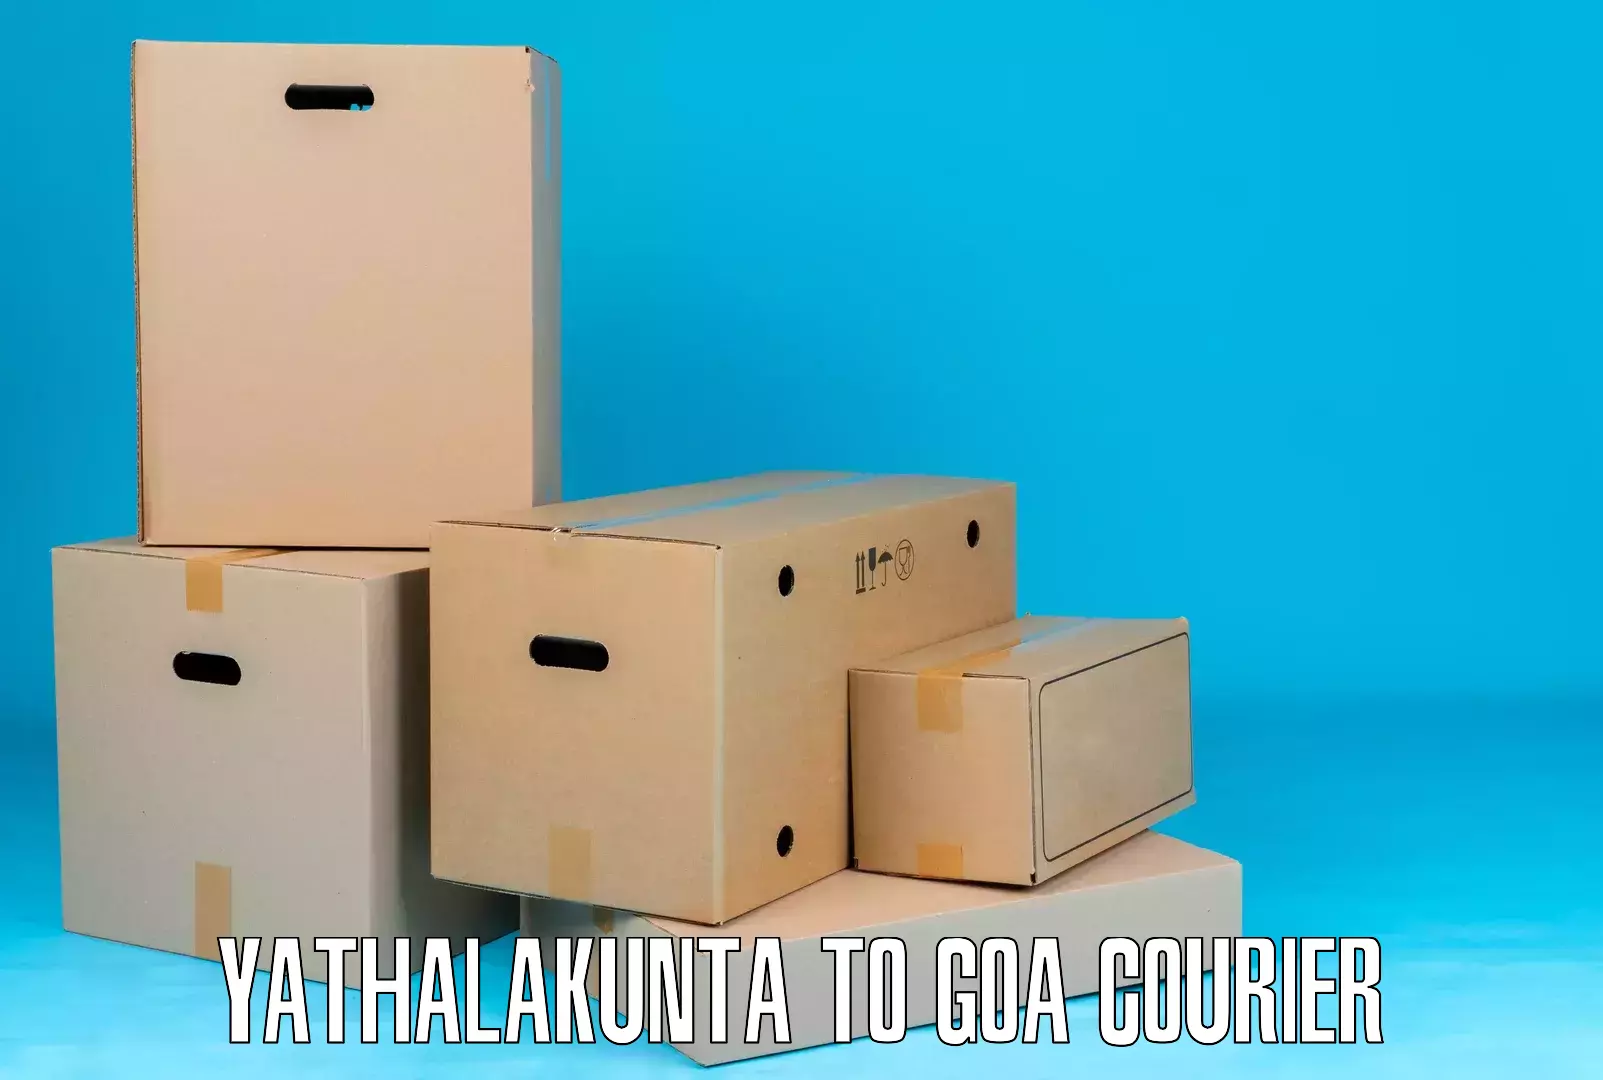 Professional courier handling in Yathalakunta to Bicholim